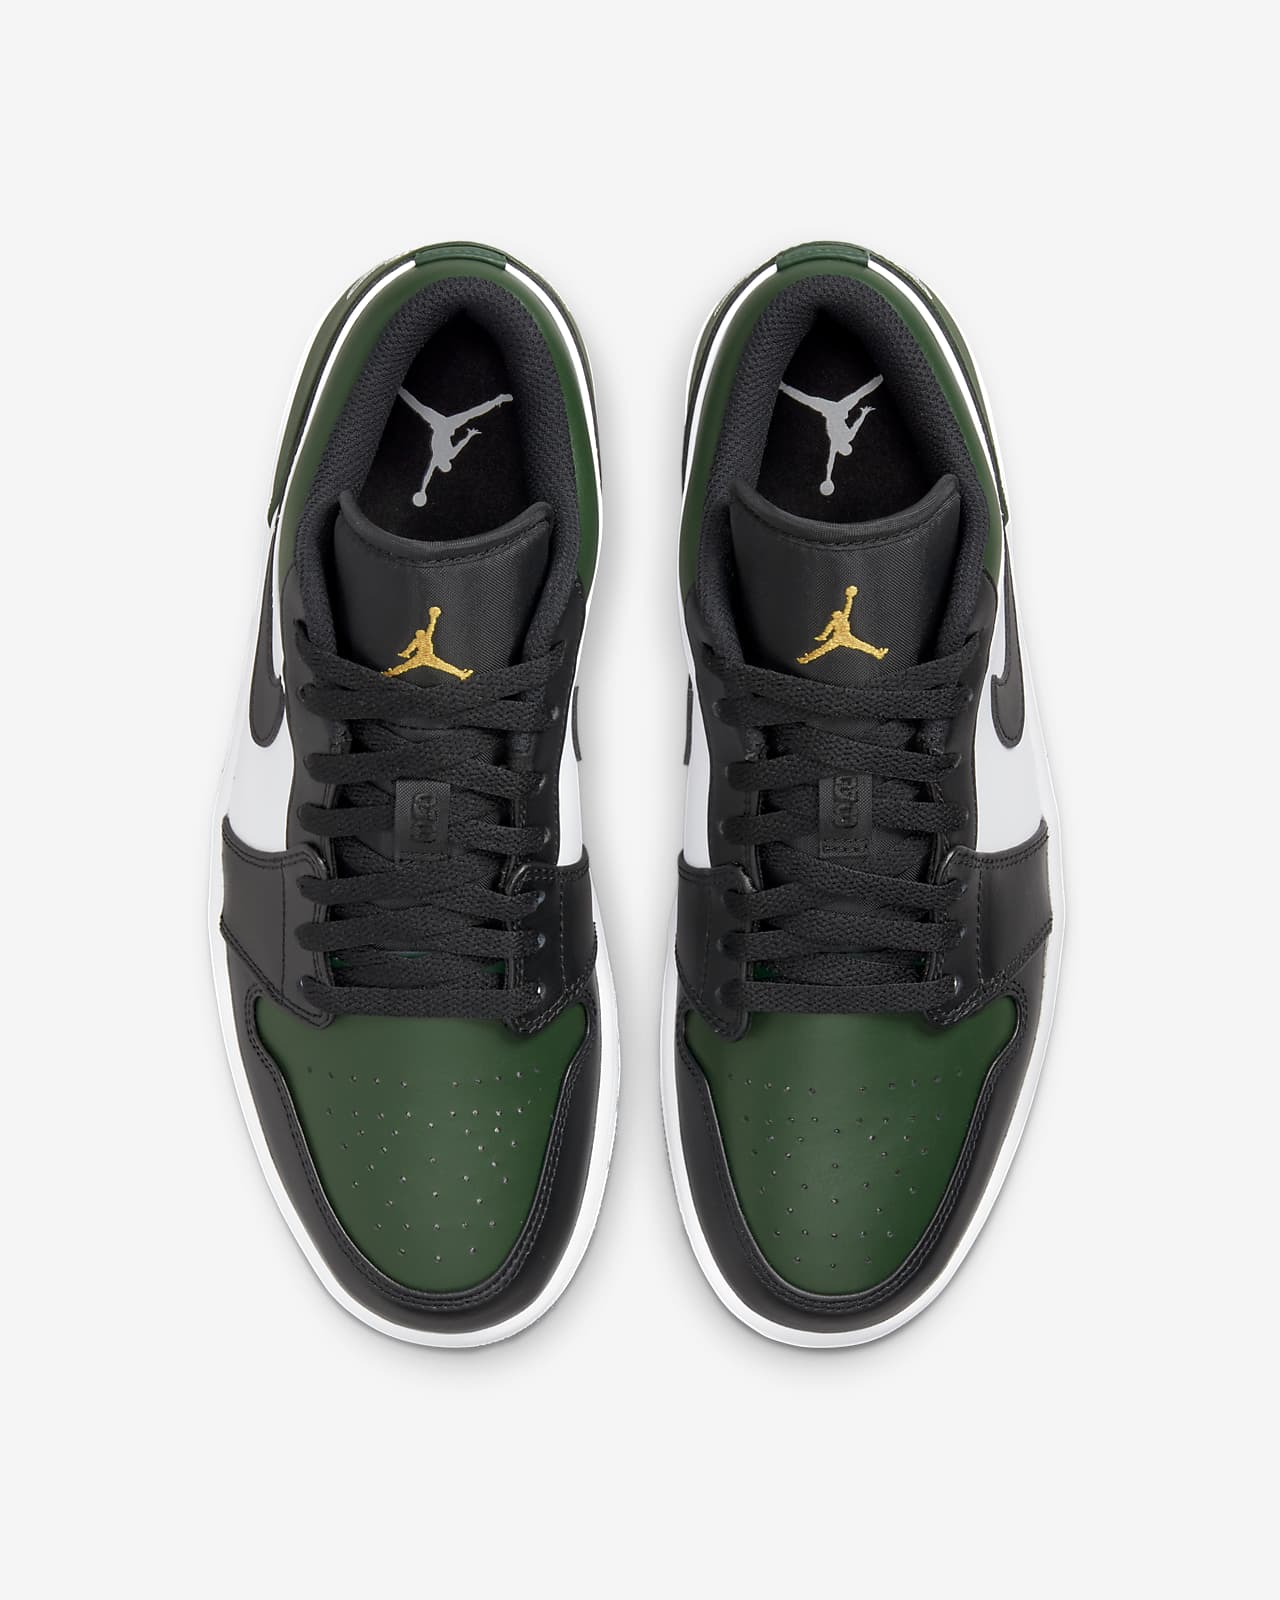 Air Jordan 1 Low cipő. Nike HU